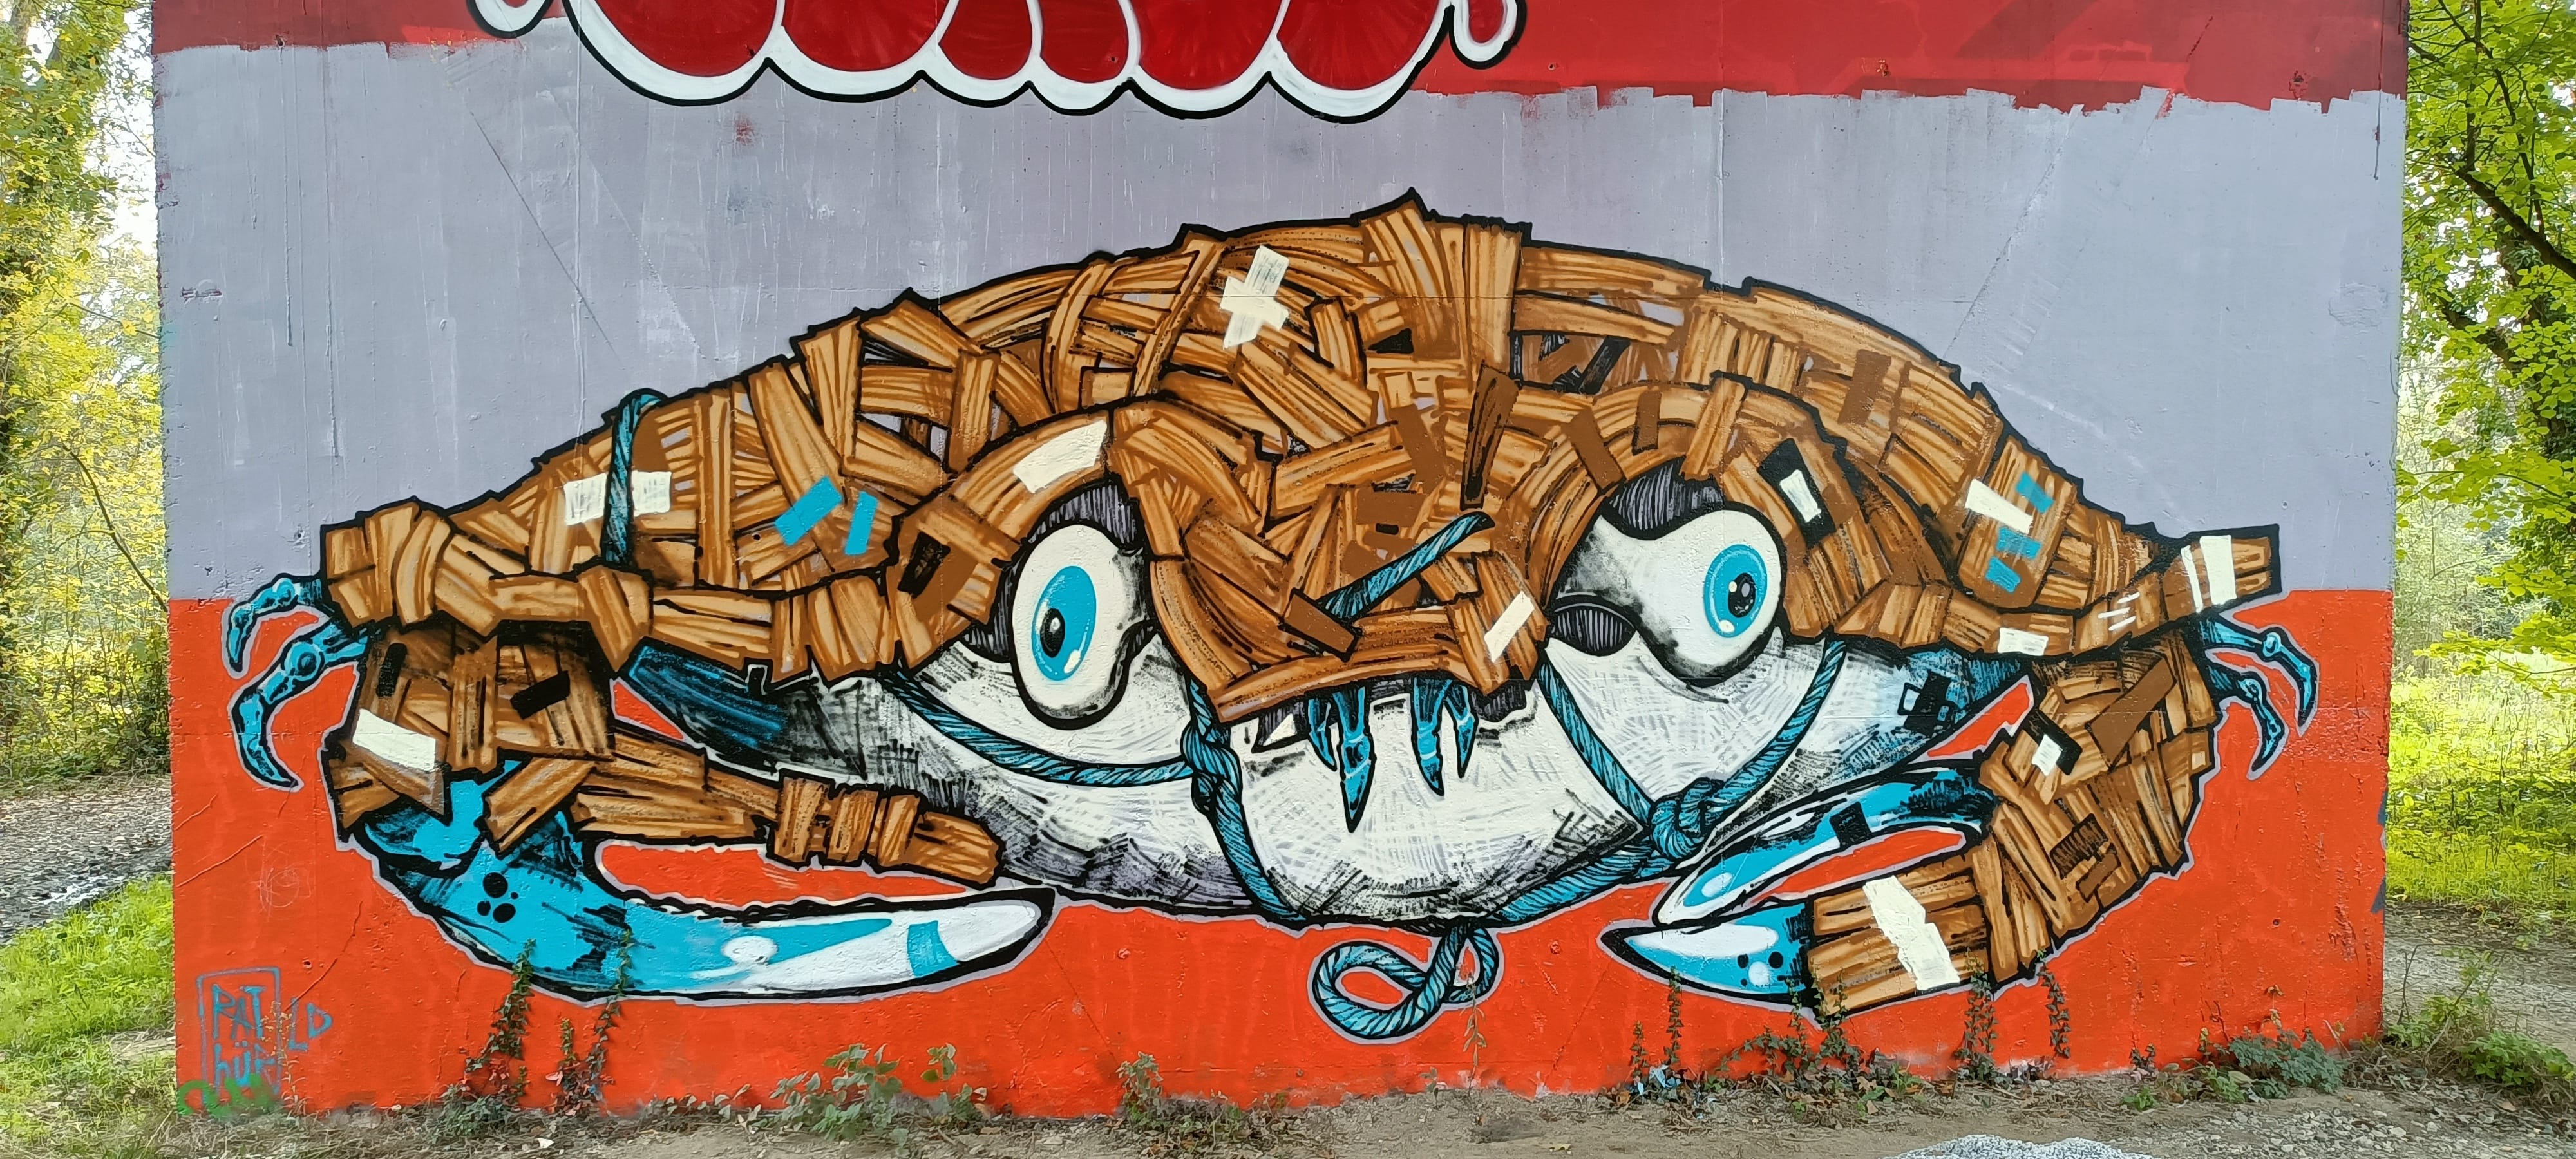 Graffiti 5484 Crabe de Rathur Ld capturé par Rabot à Nantes France